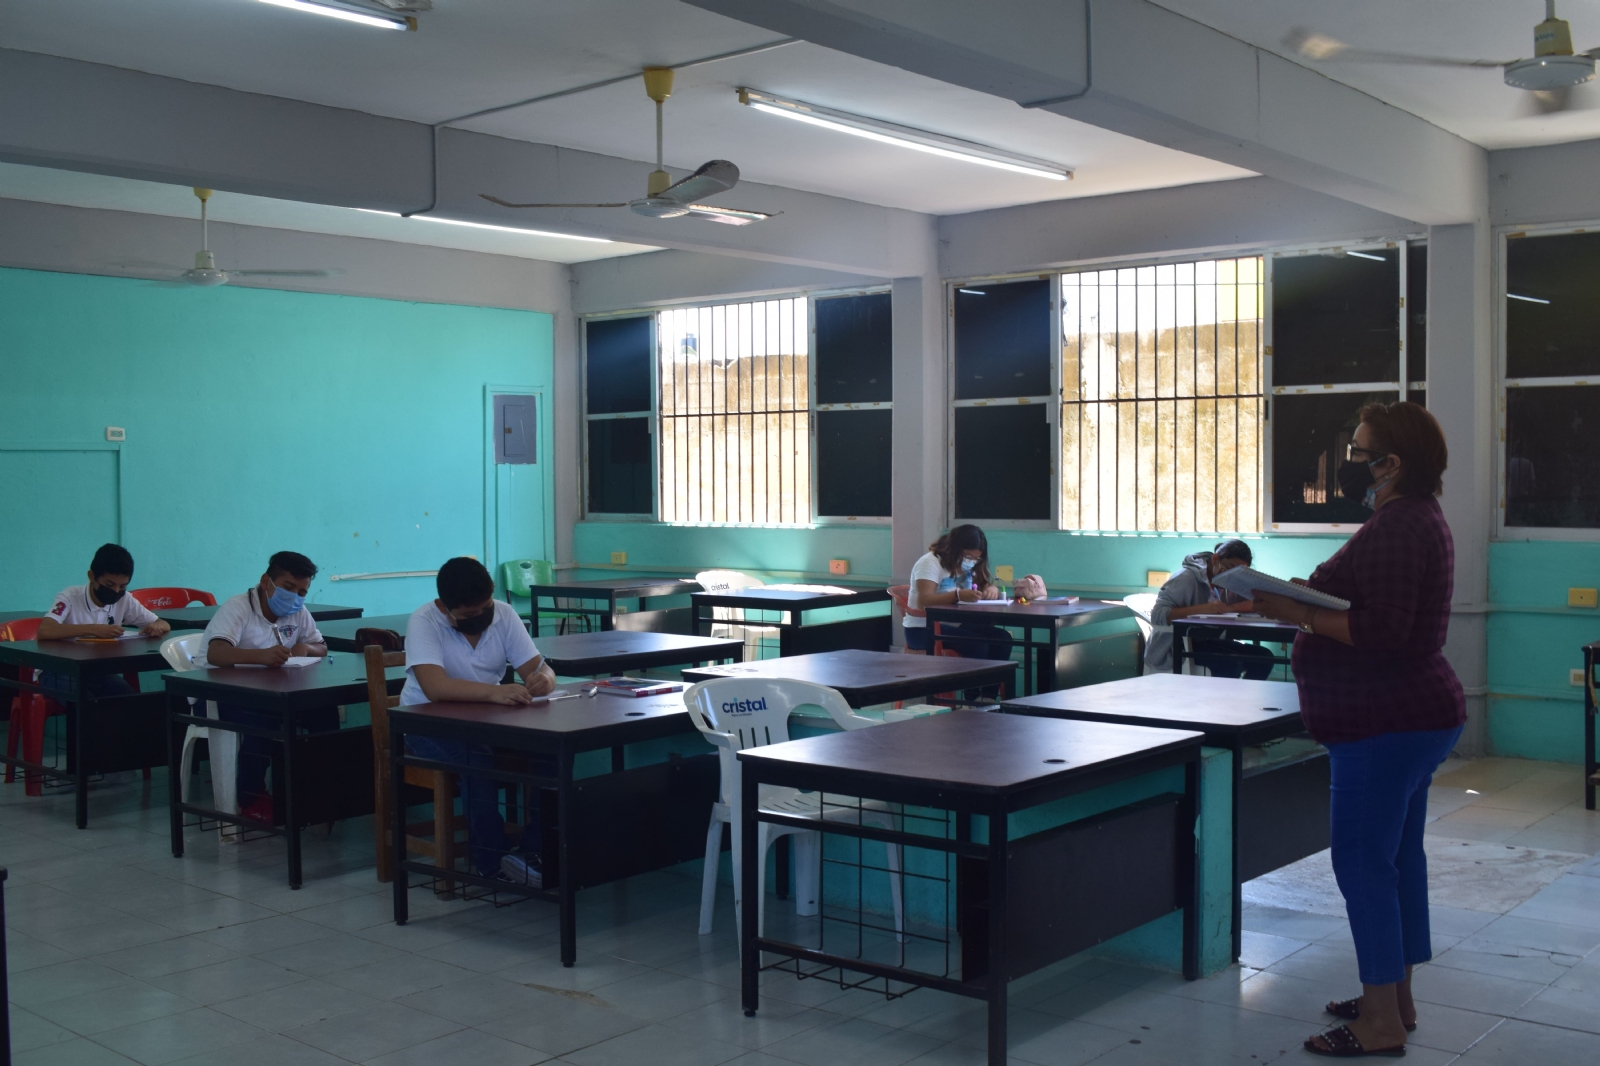 Cierran salón del colegio 'Carlos Marx' en Progreso tras intubación de un estudiante por COVID-19